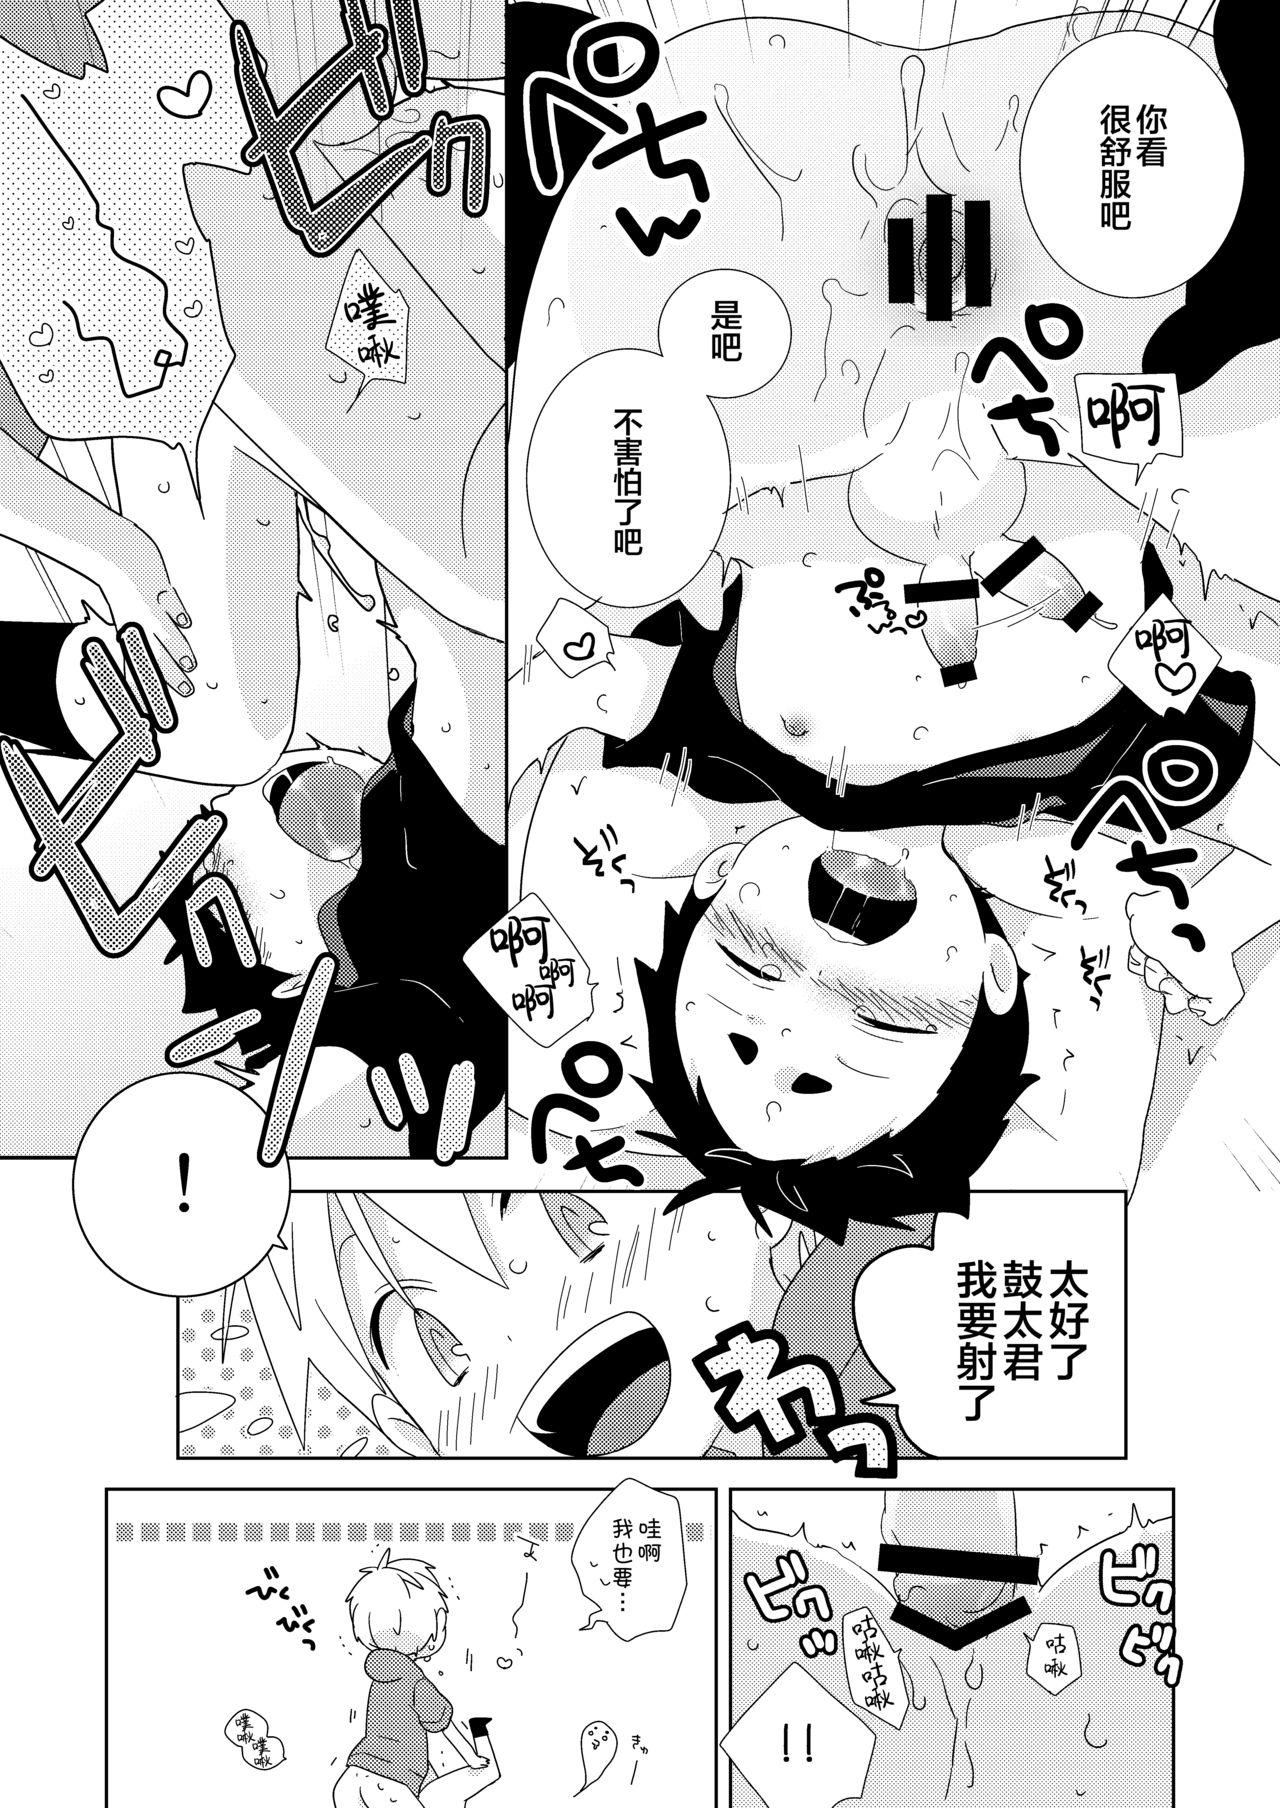 Nalgas Kota-kun Ecchi Shiyo! Culo Grande - Page 10